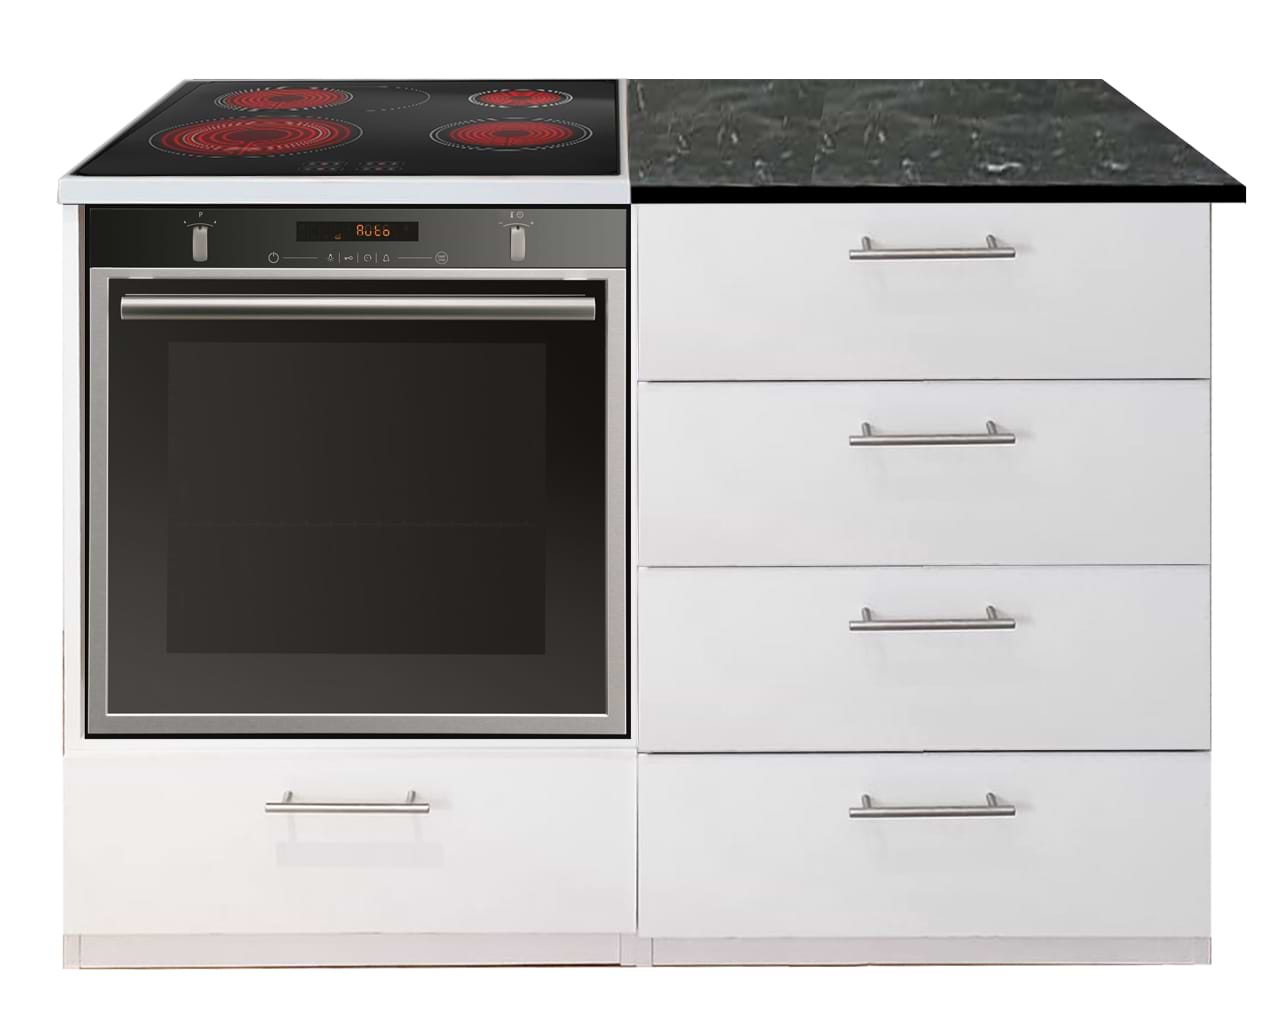 אי מגירות למטבח משולב עבור תנור וכיריים בילד אין דמוי שיש צבע שחור 77022 אביעם